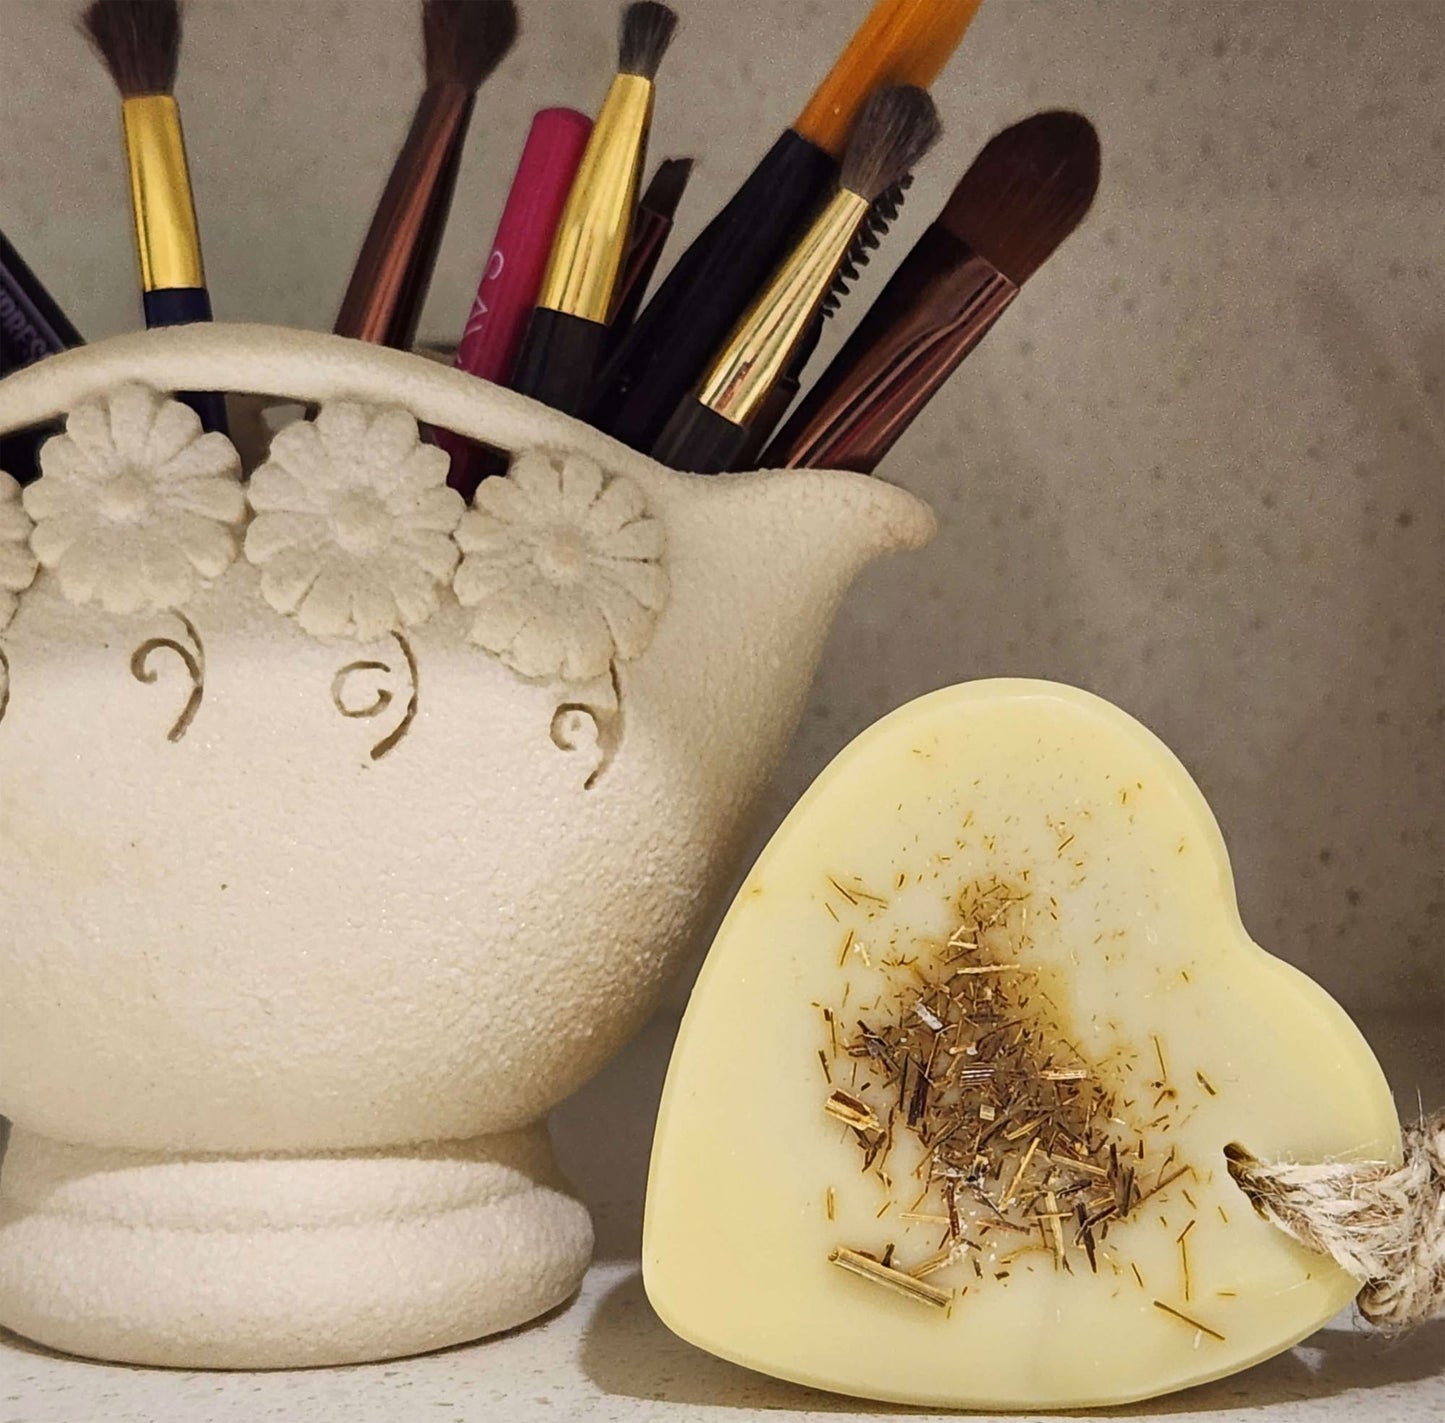 Heart-shaped handmade soap